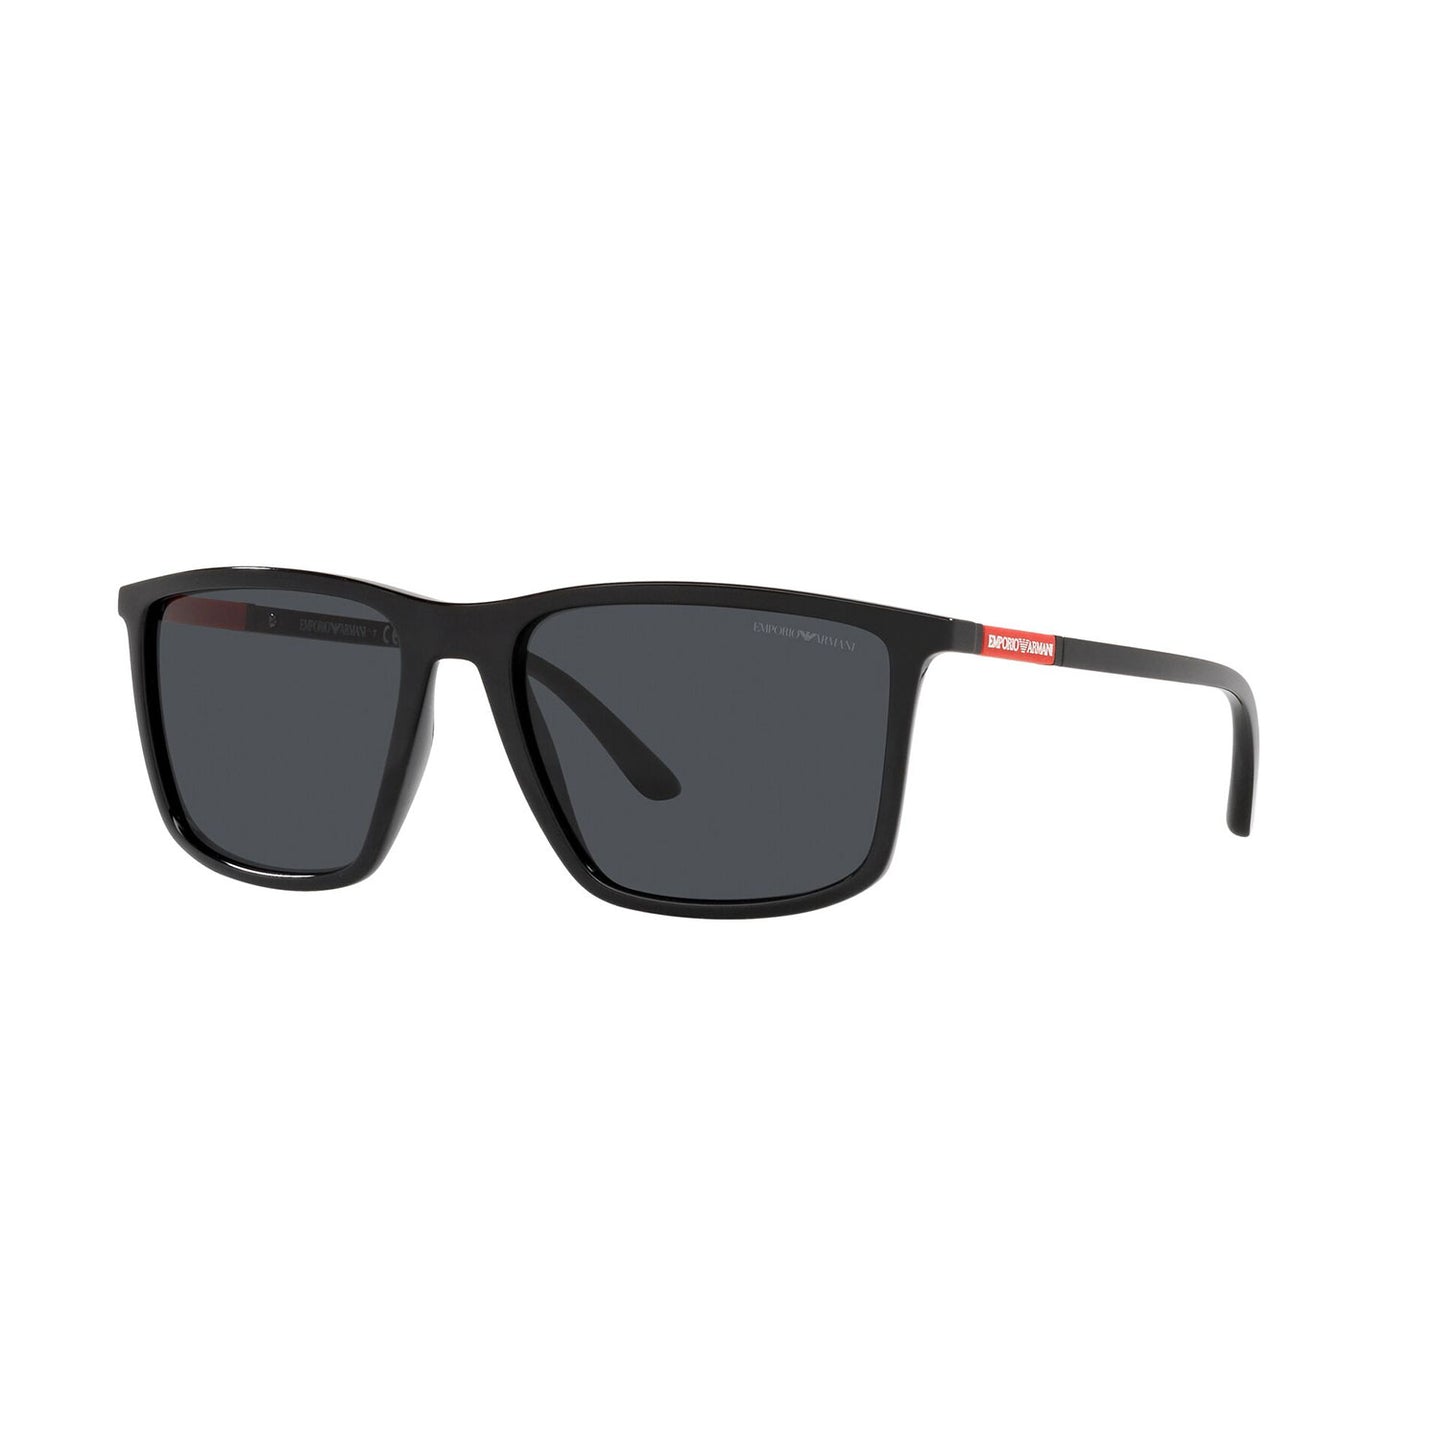 sunglasses emporio armani model ea 4161 color 501787 black